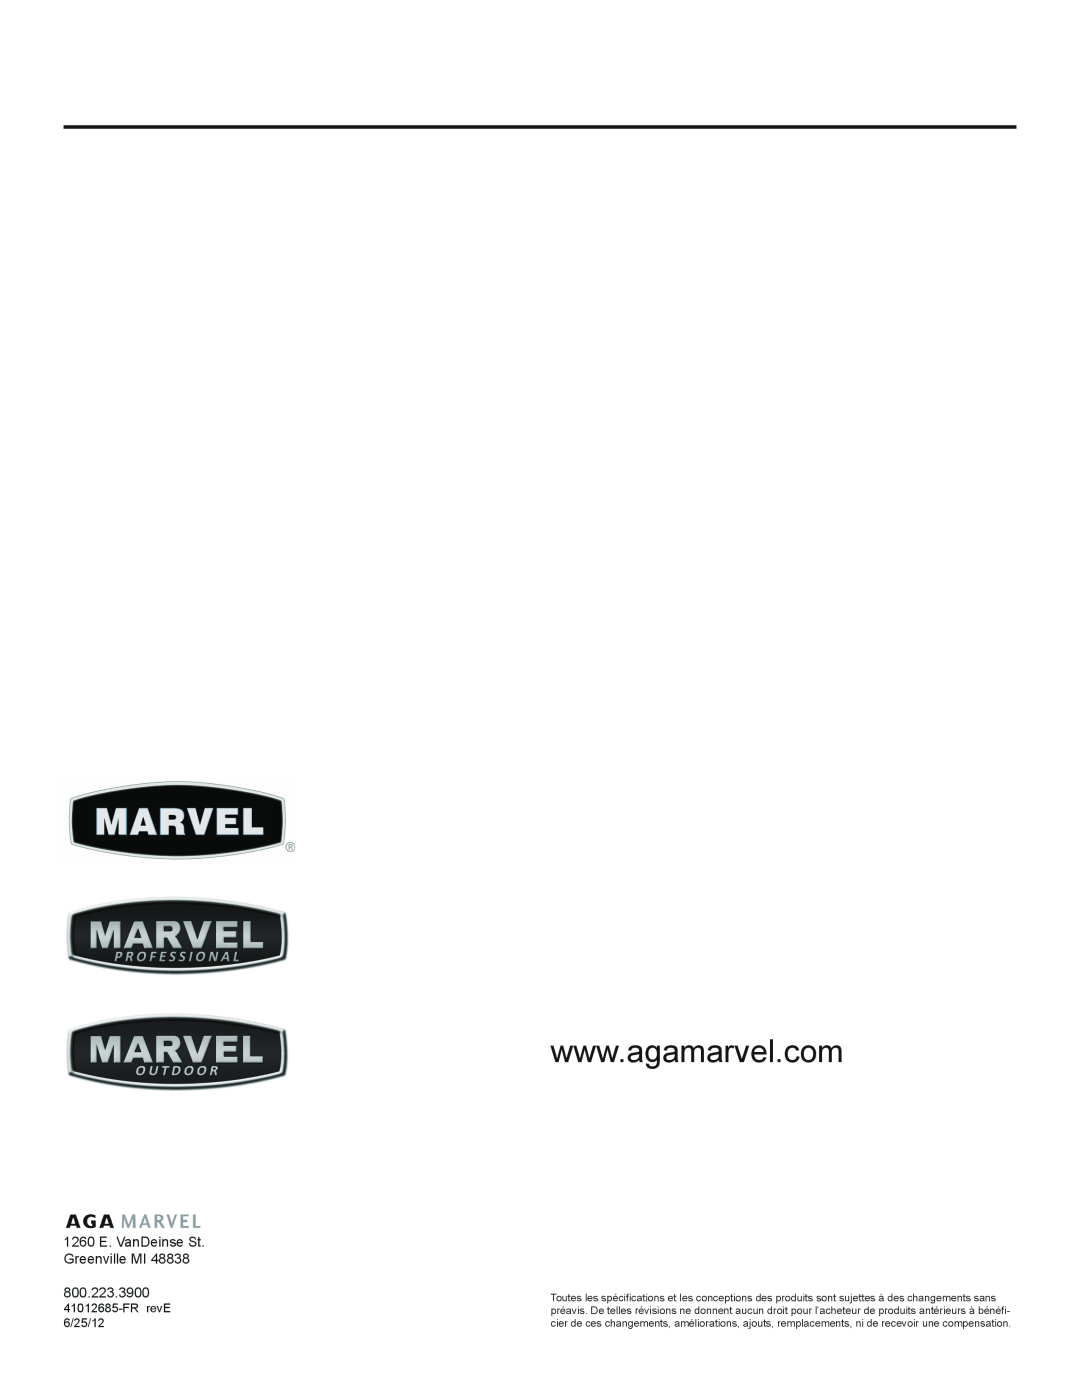 Marvel Industries 61ARMBBOL manual 1260 E. VanDeinse St Greenville MI, FR revE 6/25/12 